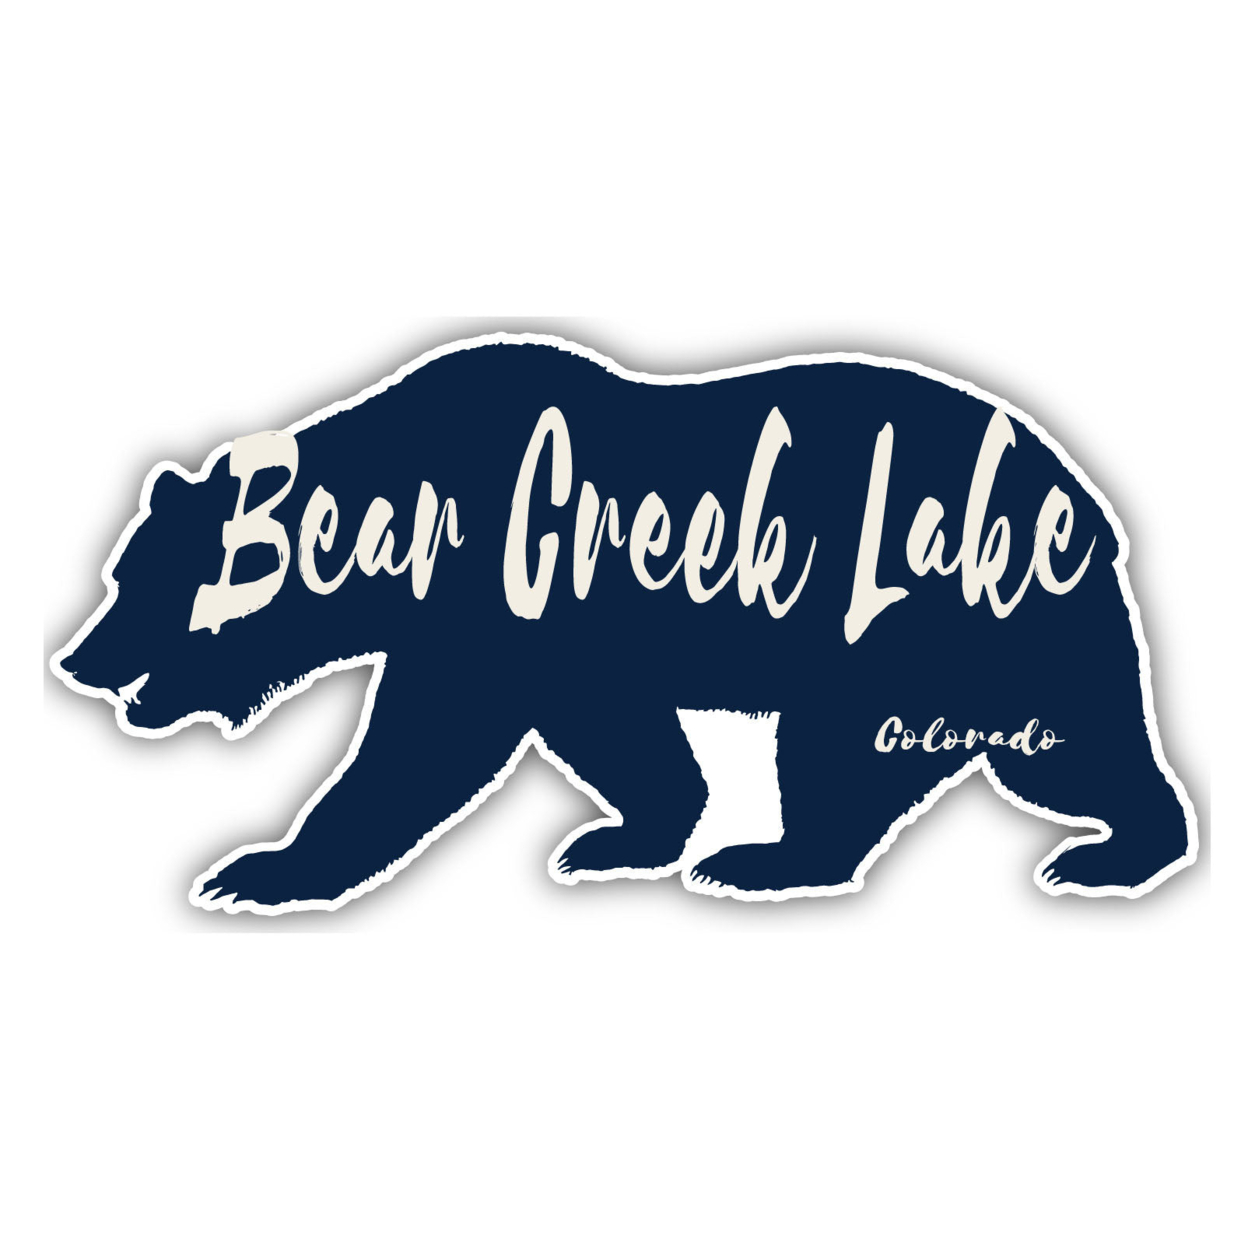 Bear Creek Lake Colorado Souvenir Decorative Stickers (Choose Theme And Size) - Single Unit, 10-Inch, Bear